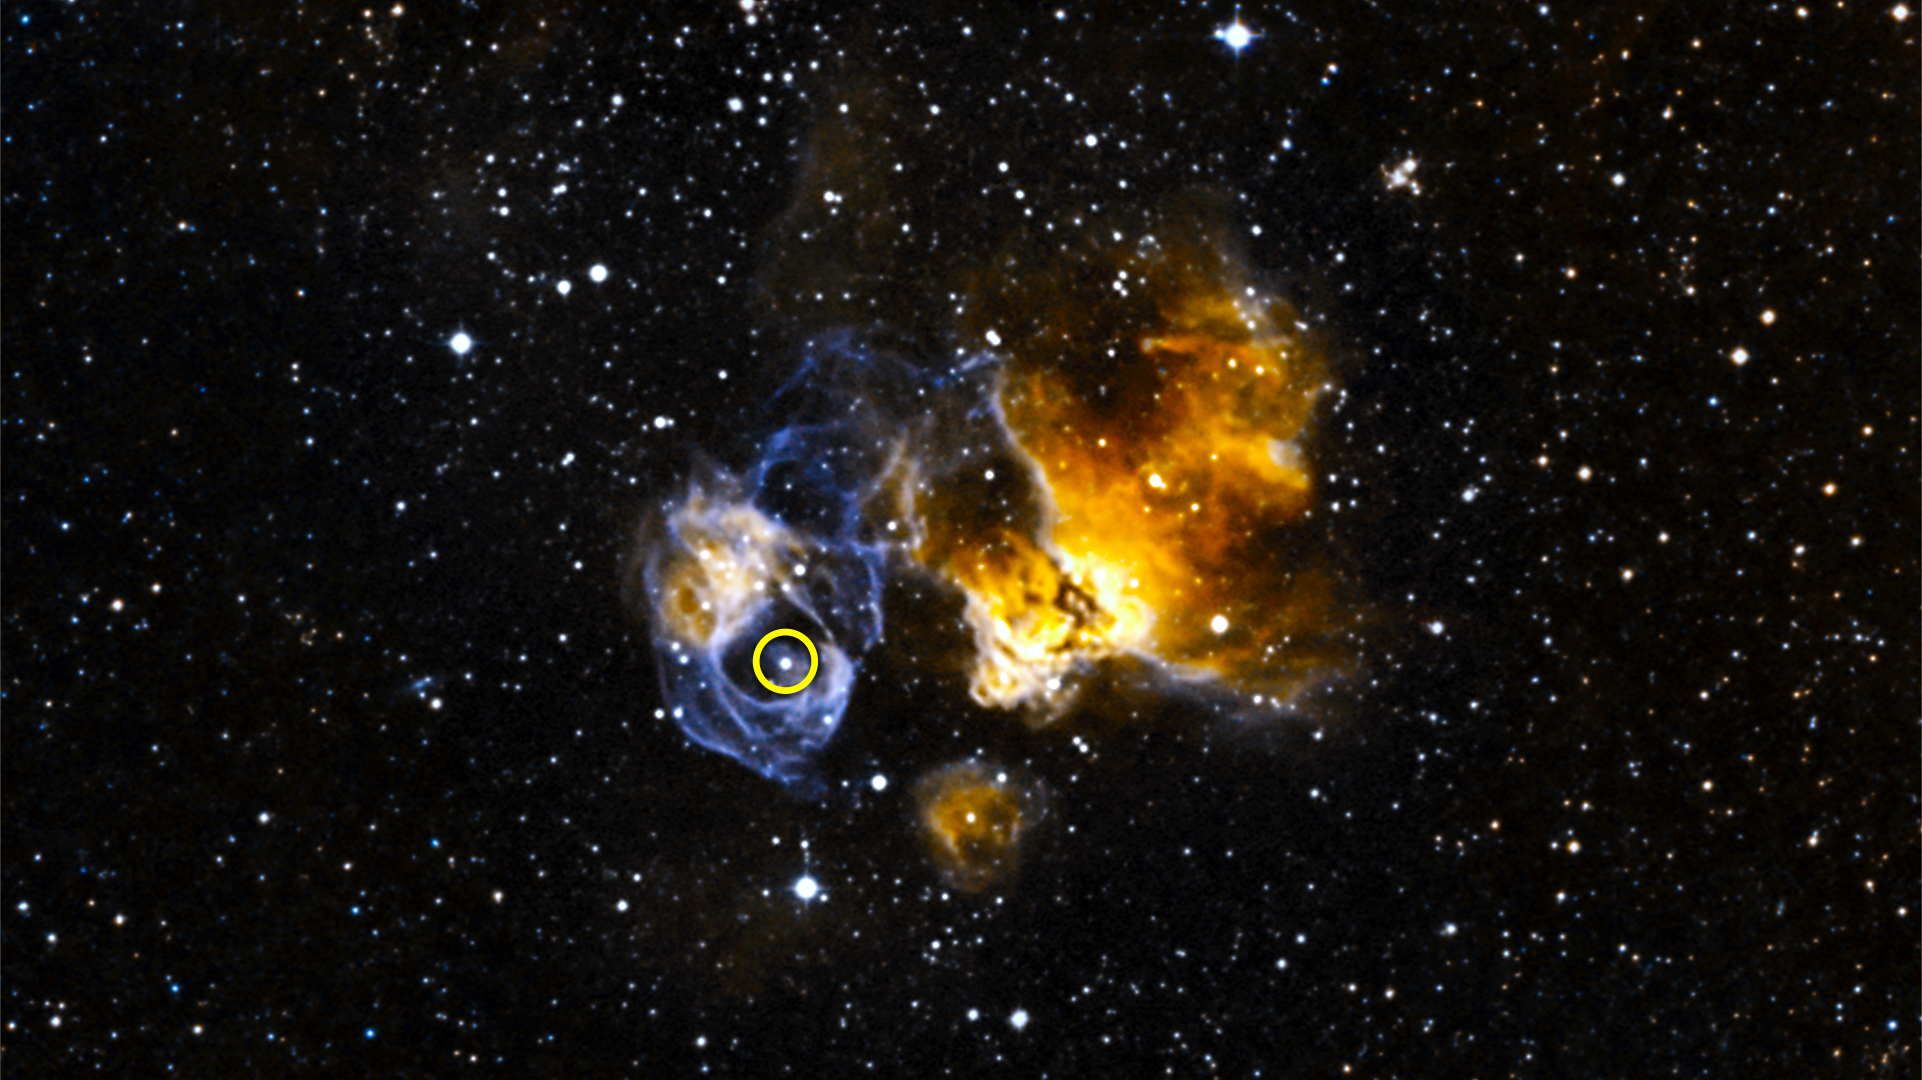 DEM L241 est un reste de supernova situé dans le Grand Nuage de Magellan. Le cercle sur cette image entoure l'étoile binaire LMC P3 qui s'est révélée être une puissante source de rayons gamma. © Nasa, Goddard Space Flight Center